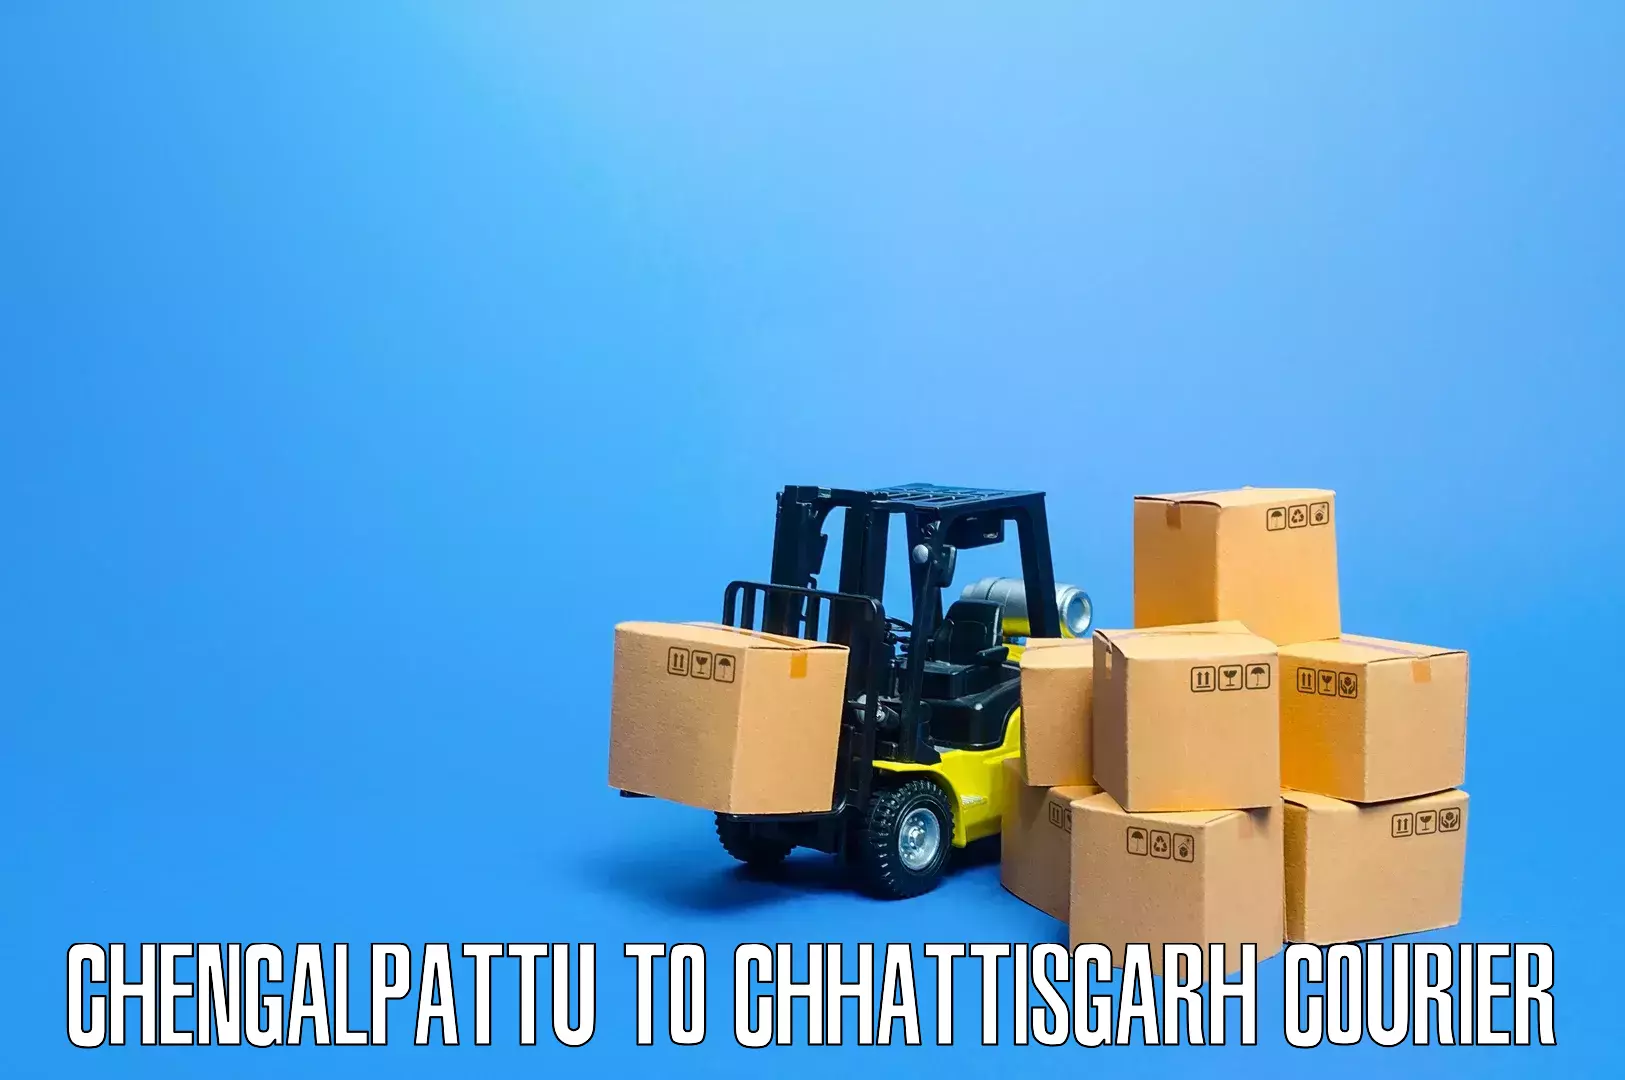 Expert goods movers Chengalpattu to Kawardha